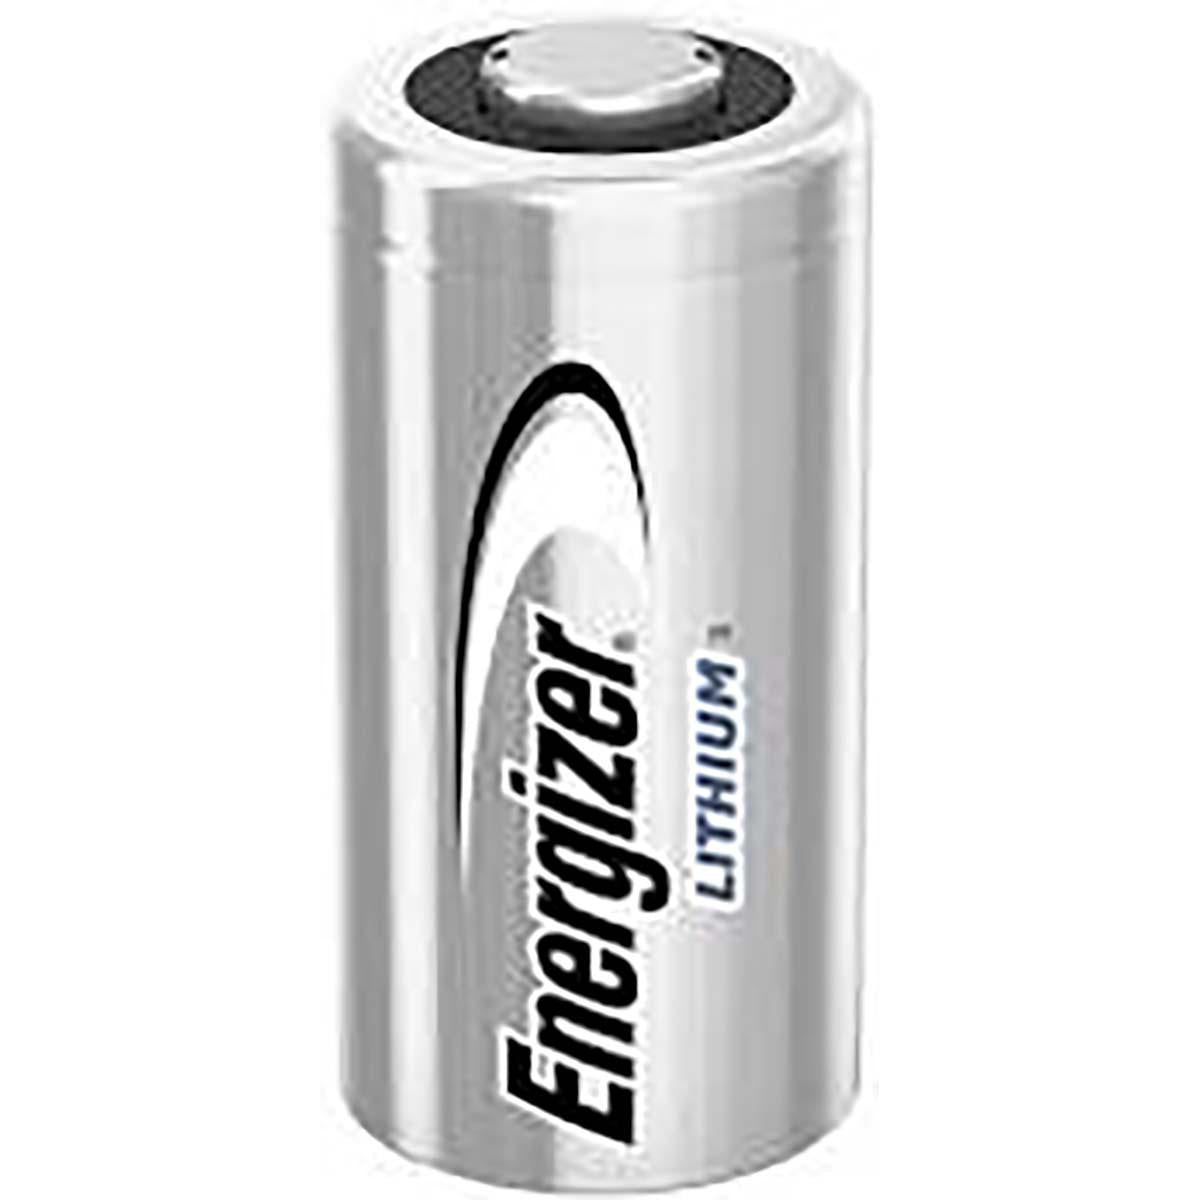 Lithiumthionylchlorid Batterie ER14505 | 3 V DC | 1500 mAh | 2-Blister | Silber